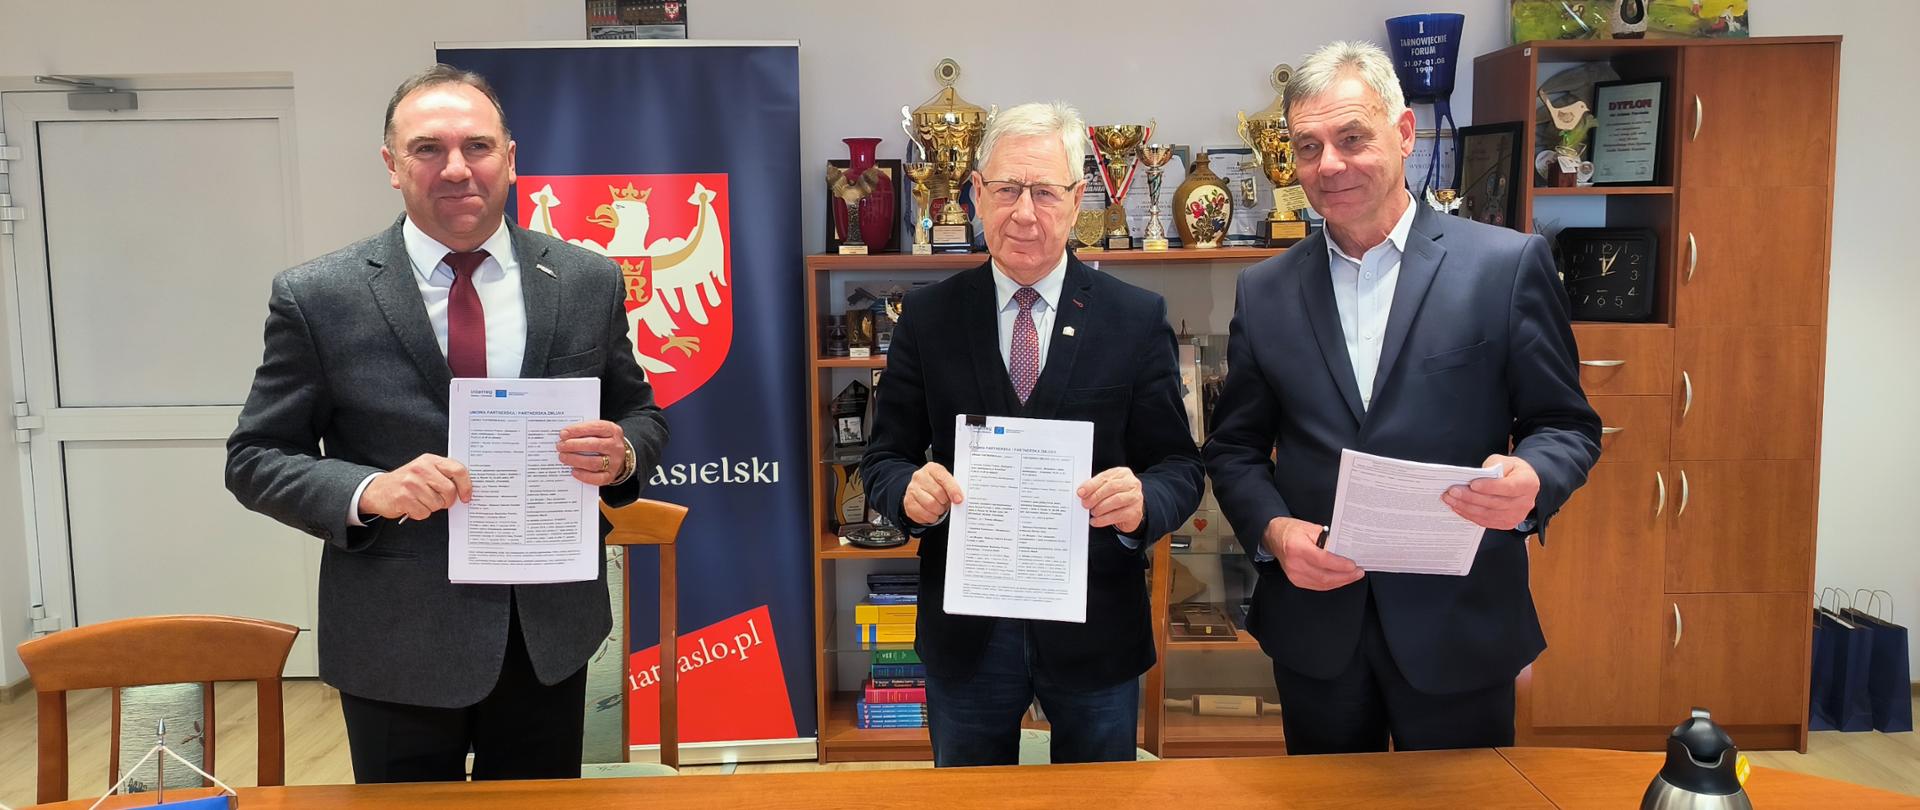 Umowa ze Słowakami na realizację „Budujemy w Jaśle, stabilizujemy w Svidnicke” podpisana
